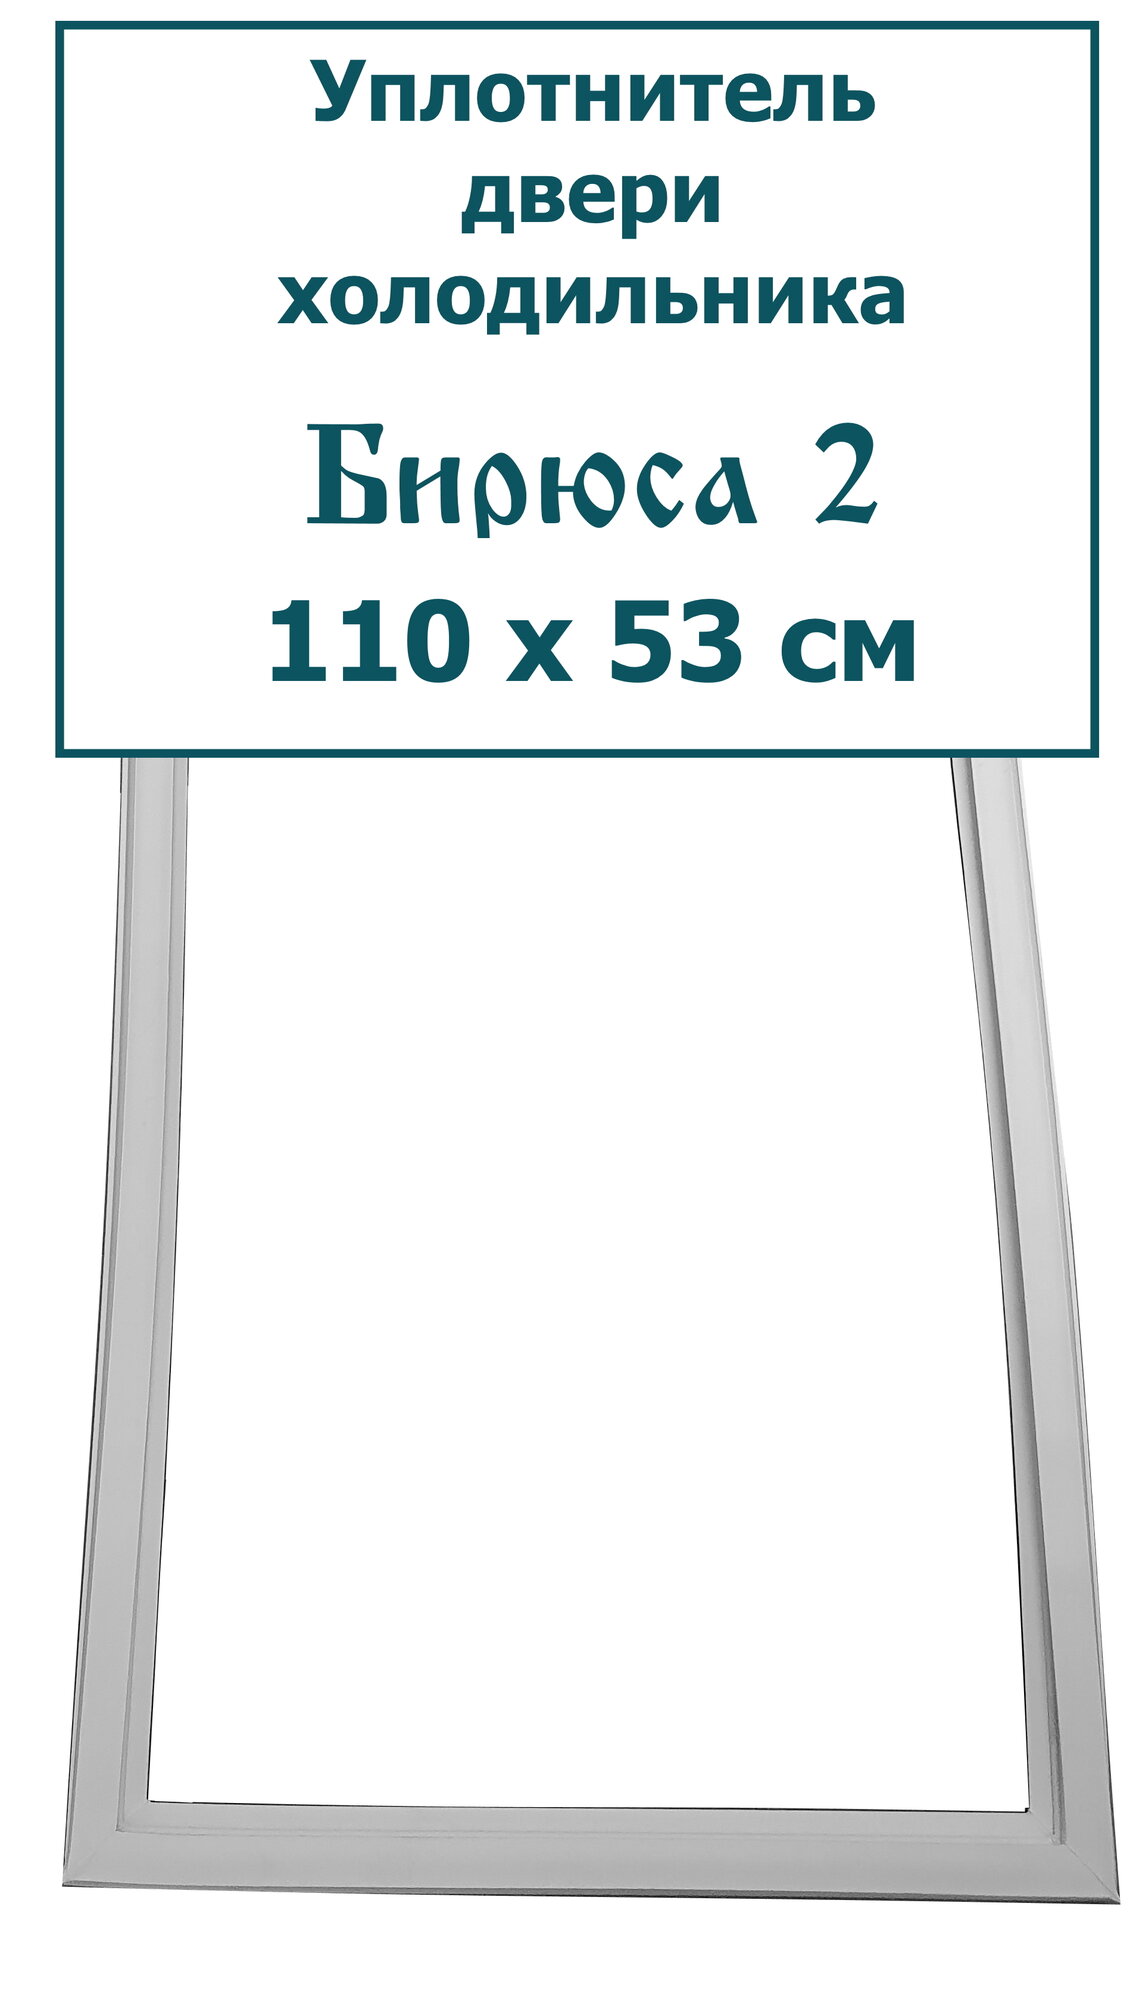 Уплотнитель двери холодильника Бирюса 2 (110 x 53 см)